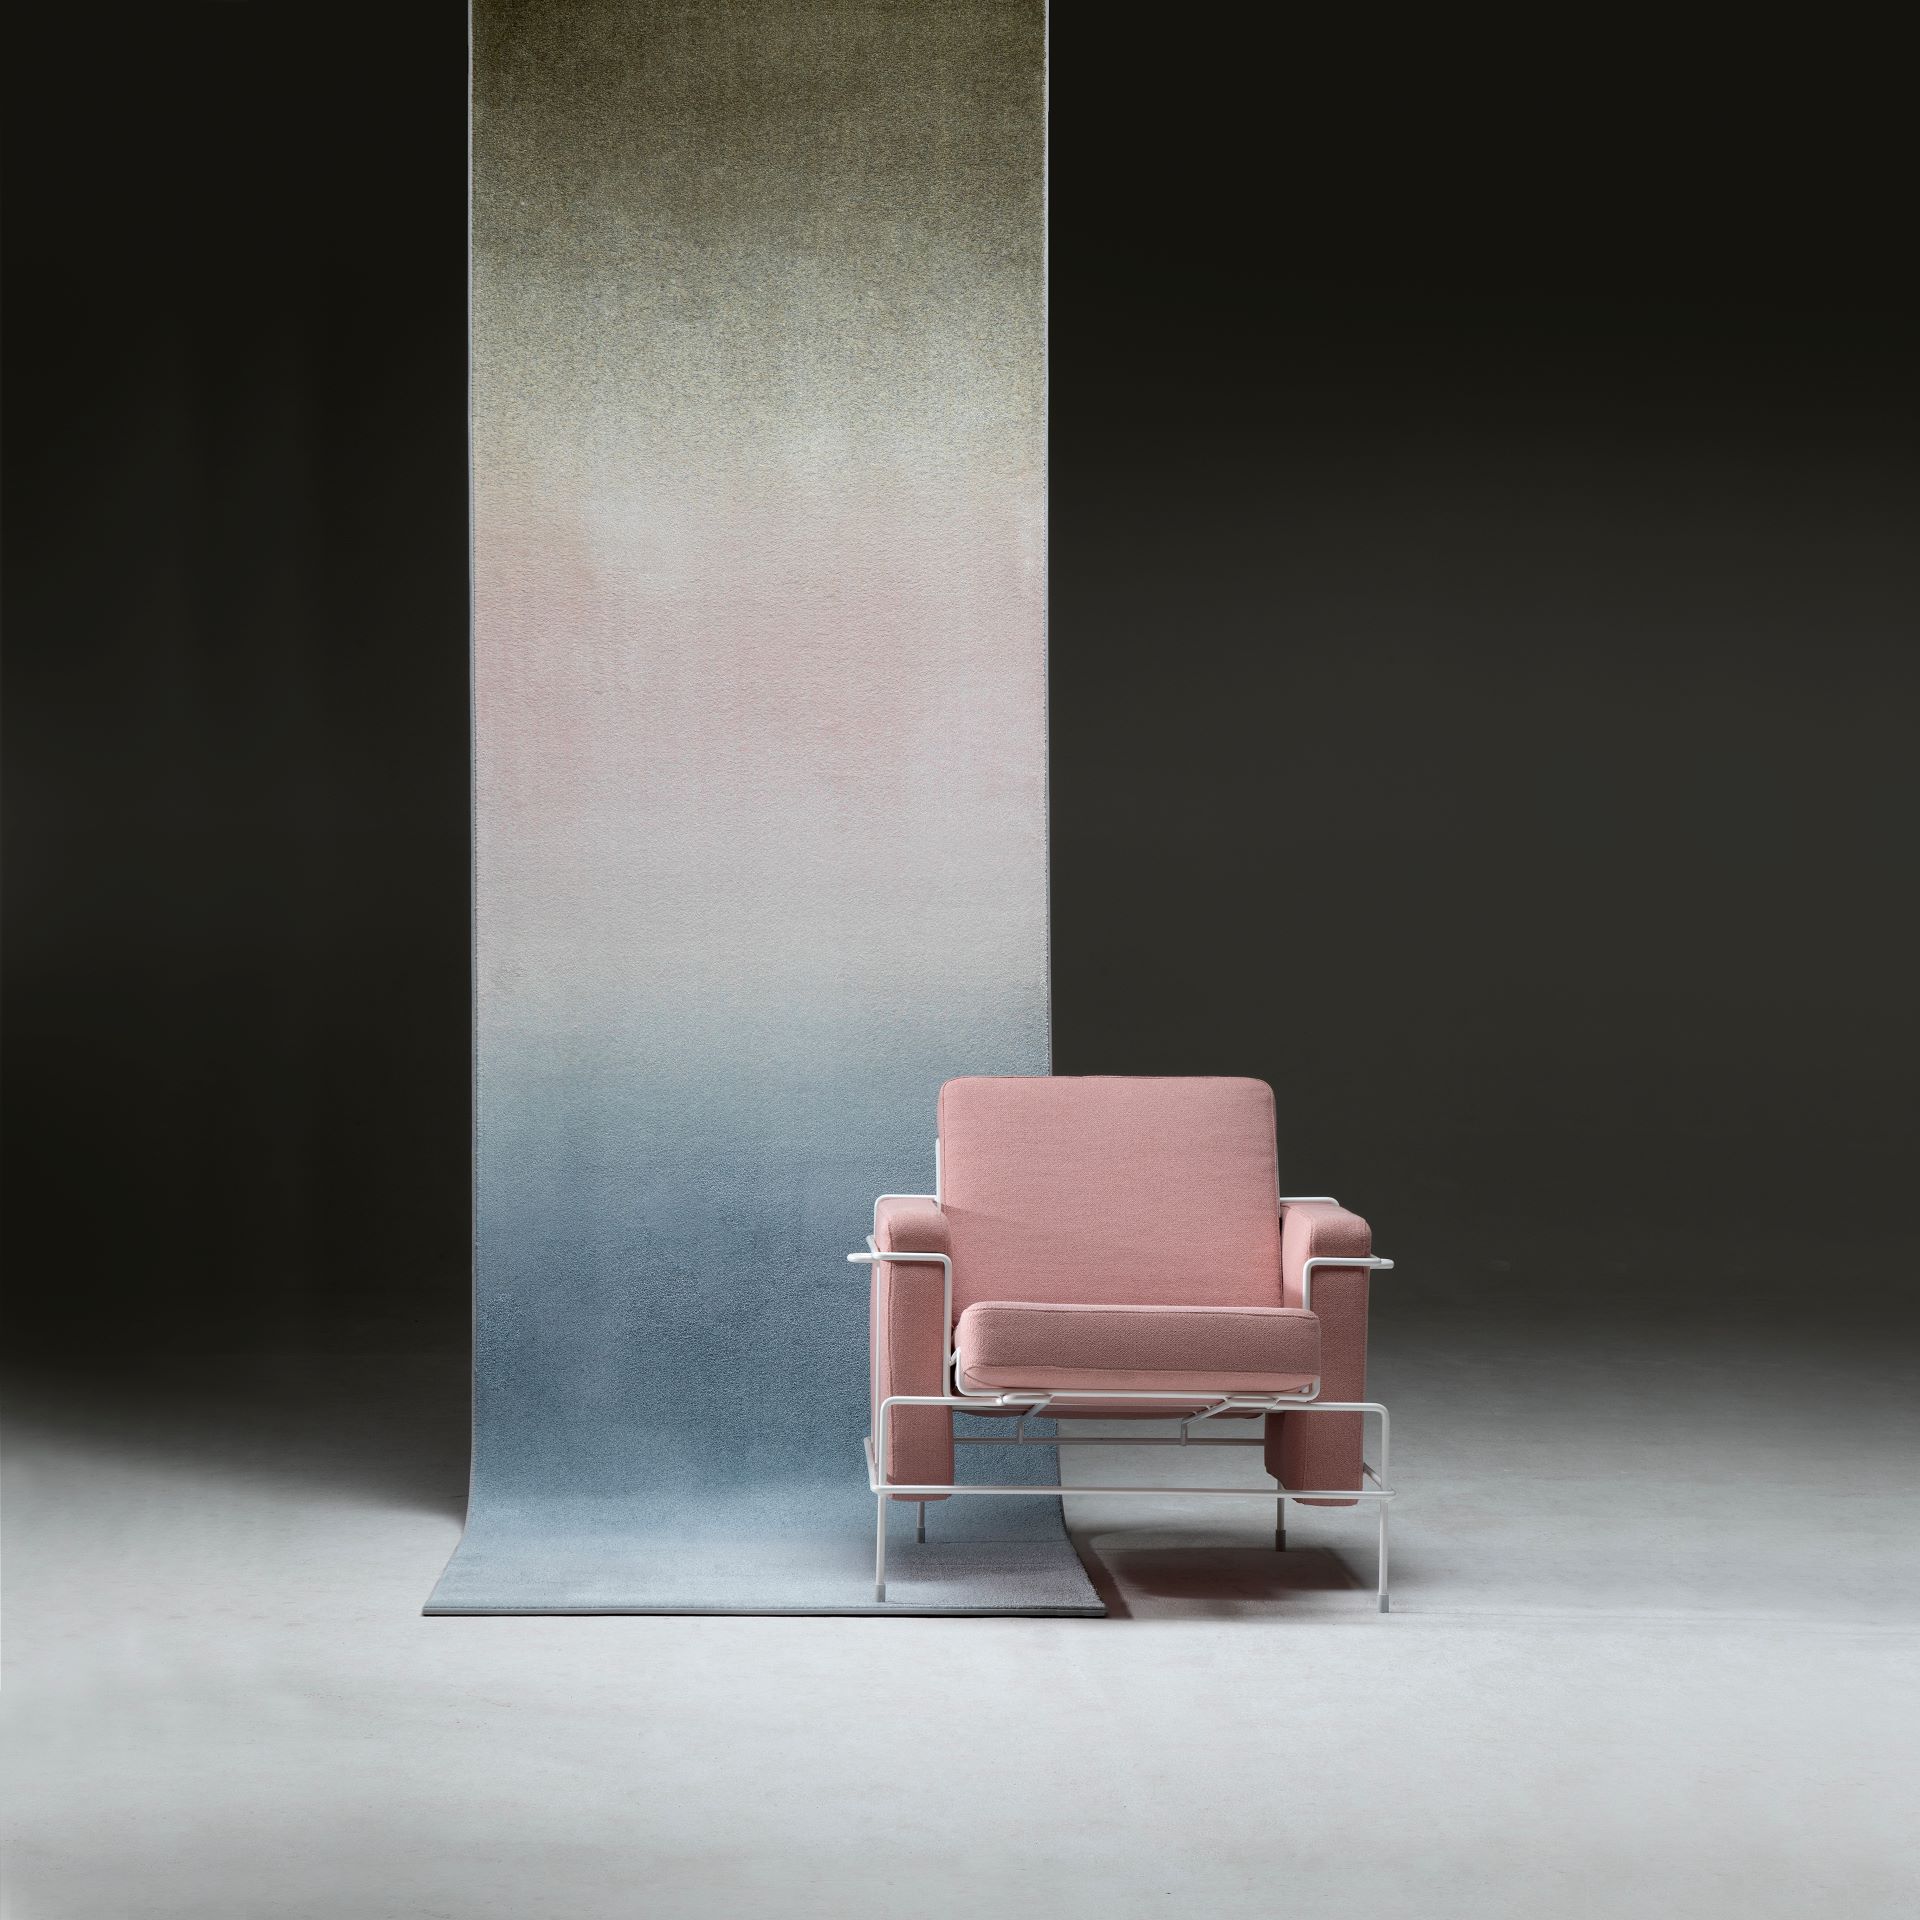 Roze/creme stoel midden in een donkere ruimte van Anker